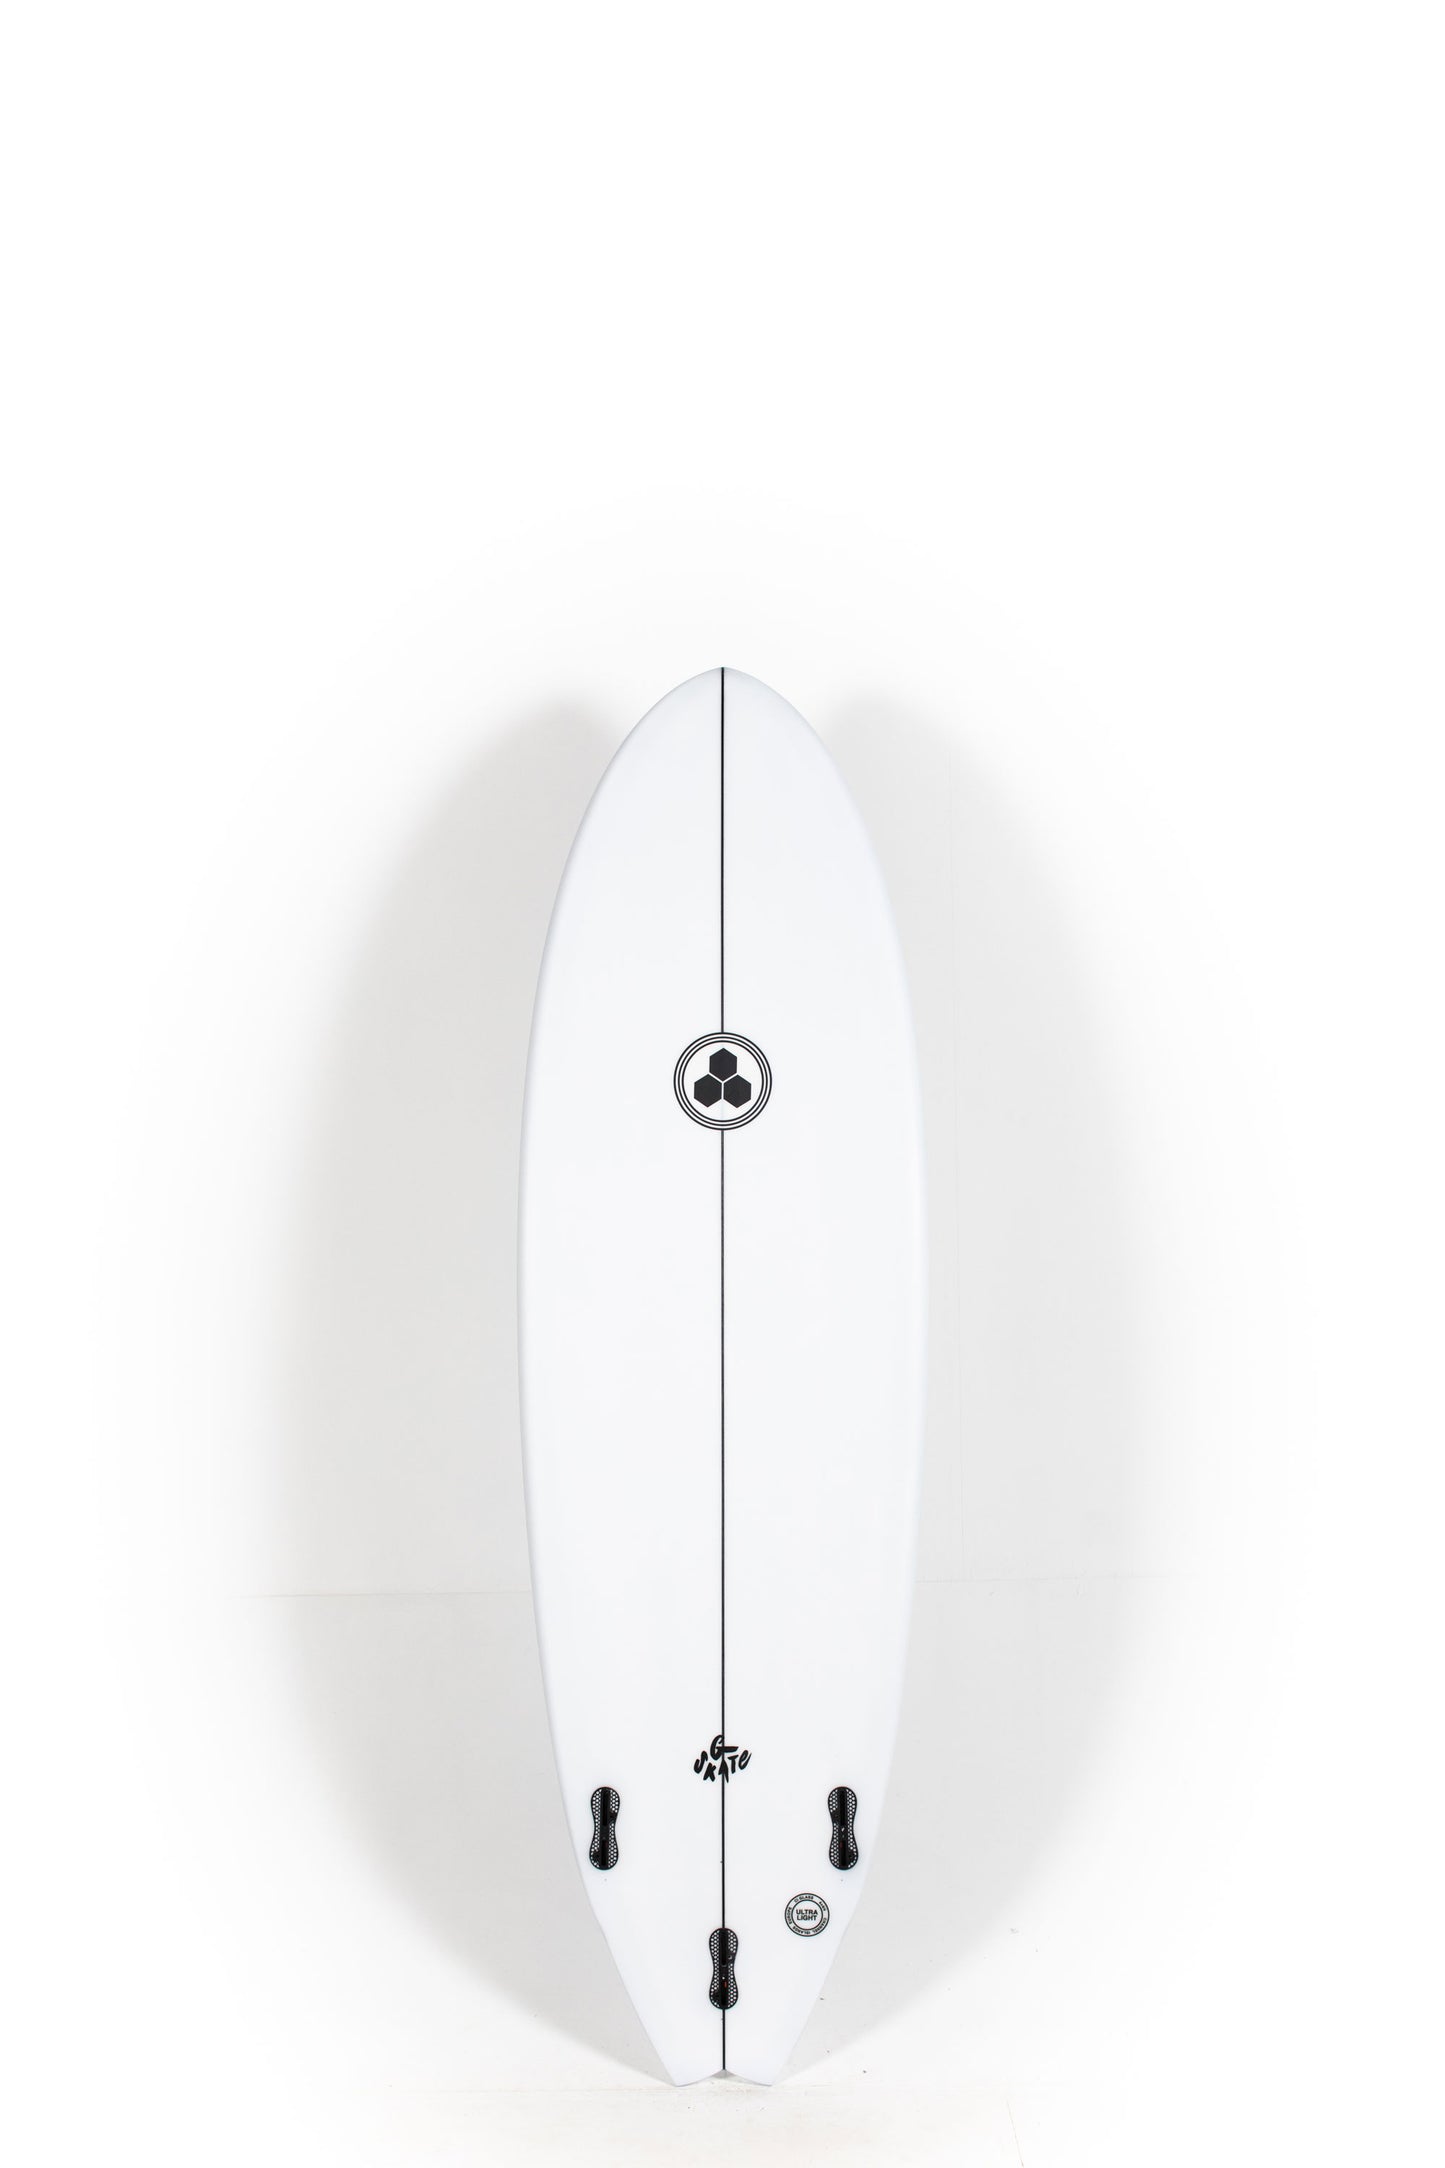 Pukas Surf Shop - Channel Islands - G-Skate by Al Merrick - 6'2" x 21 x 2 7/8 - 41,5L - CI27483